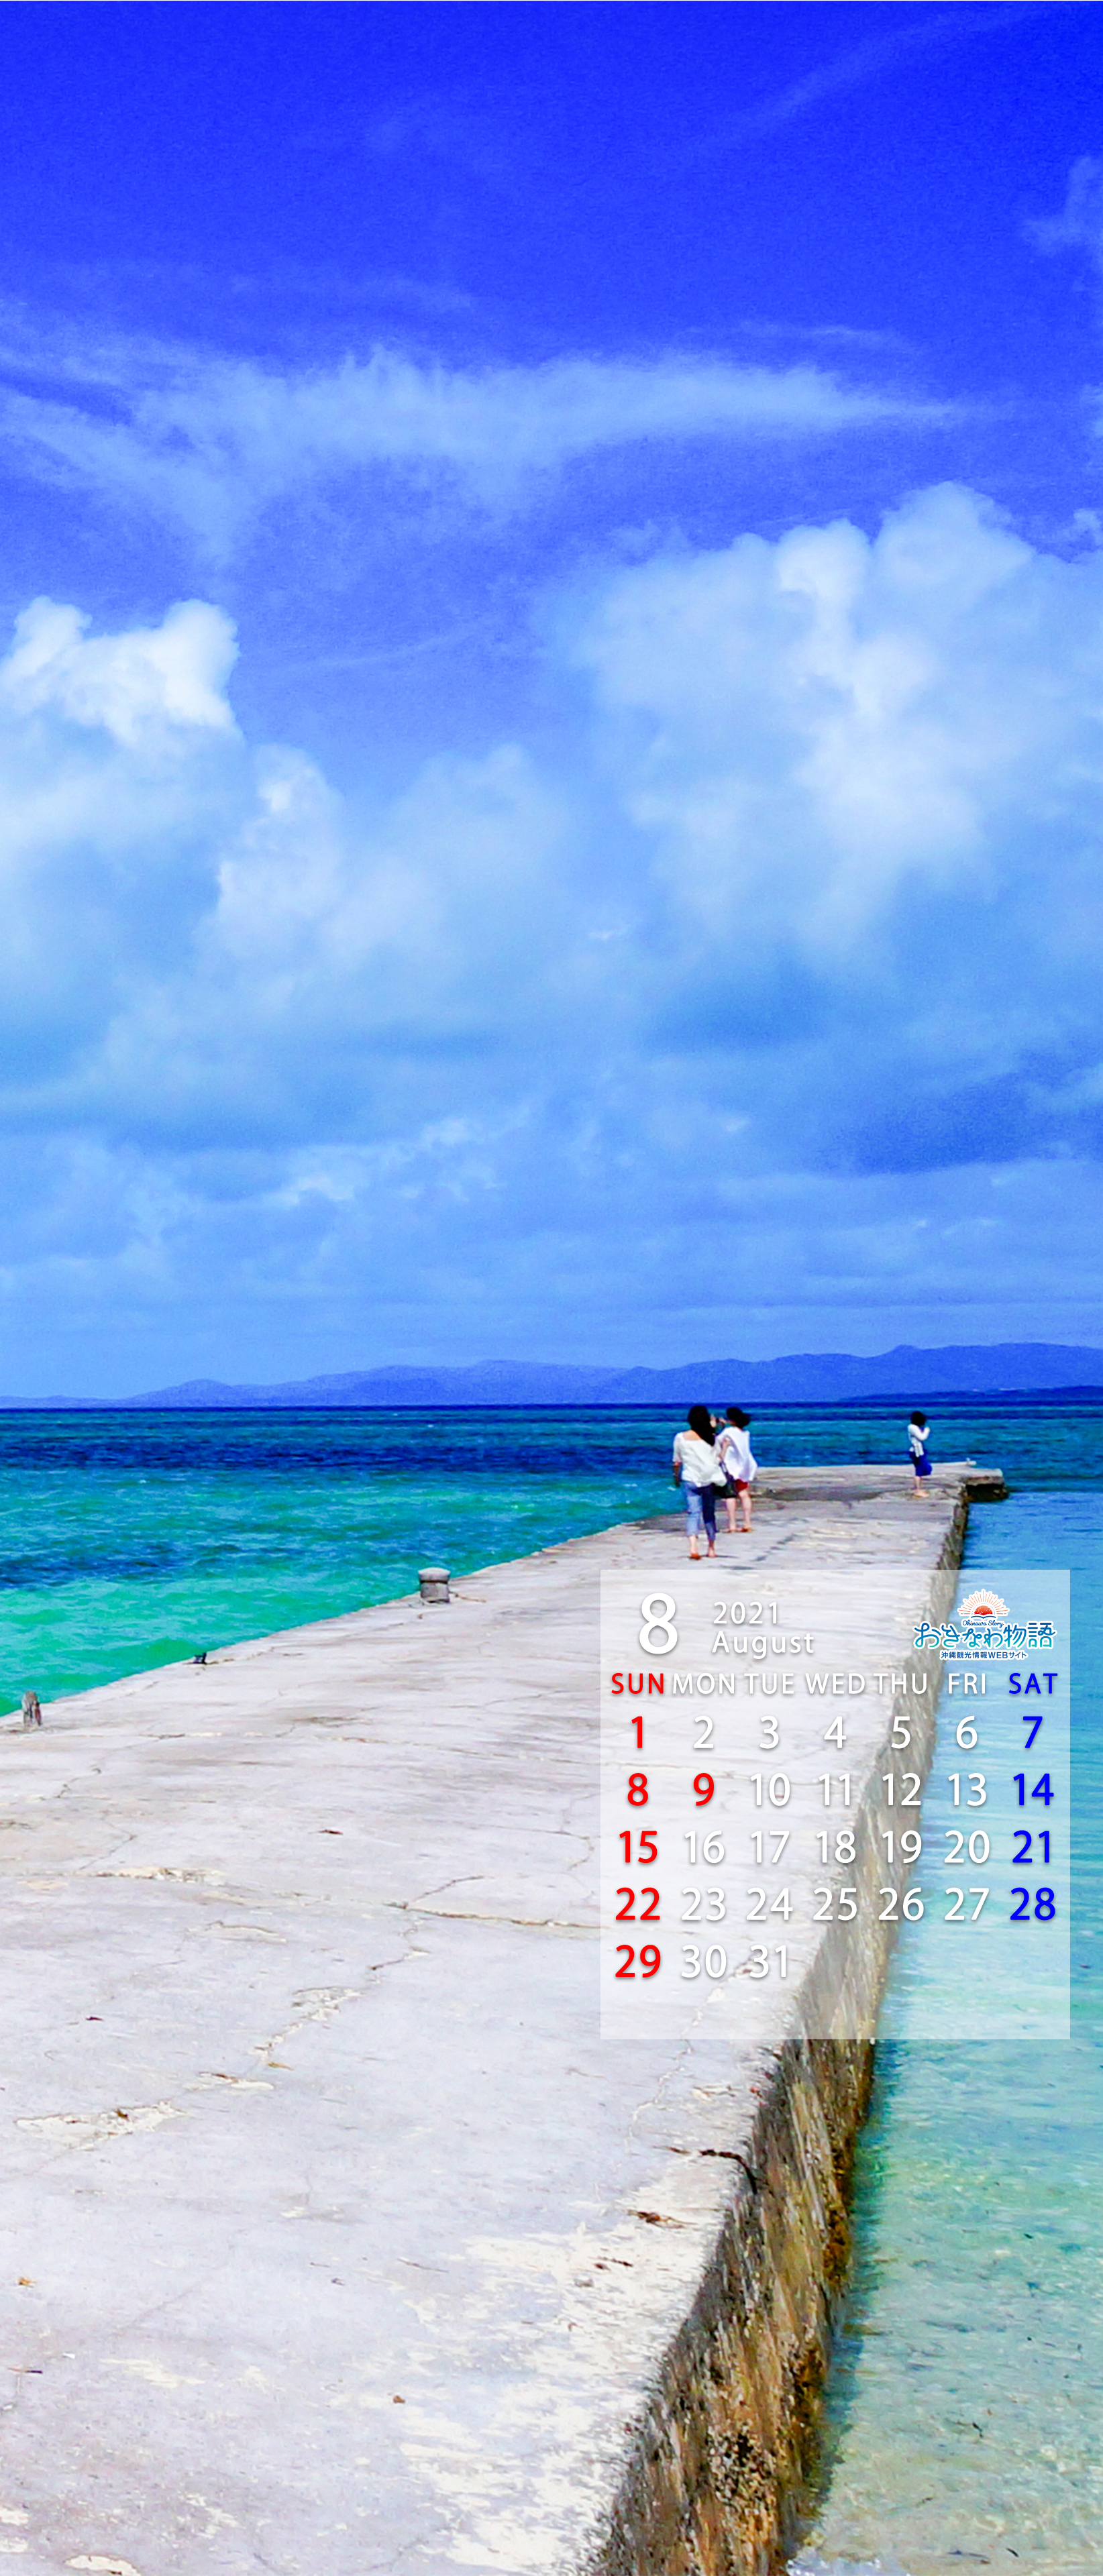 21年壁紙カレンダー 沖縄観光情報webサイト おきなわ物語